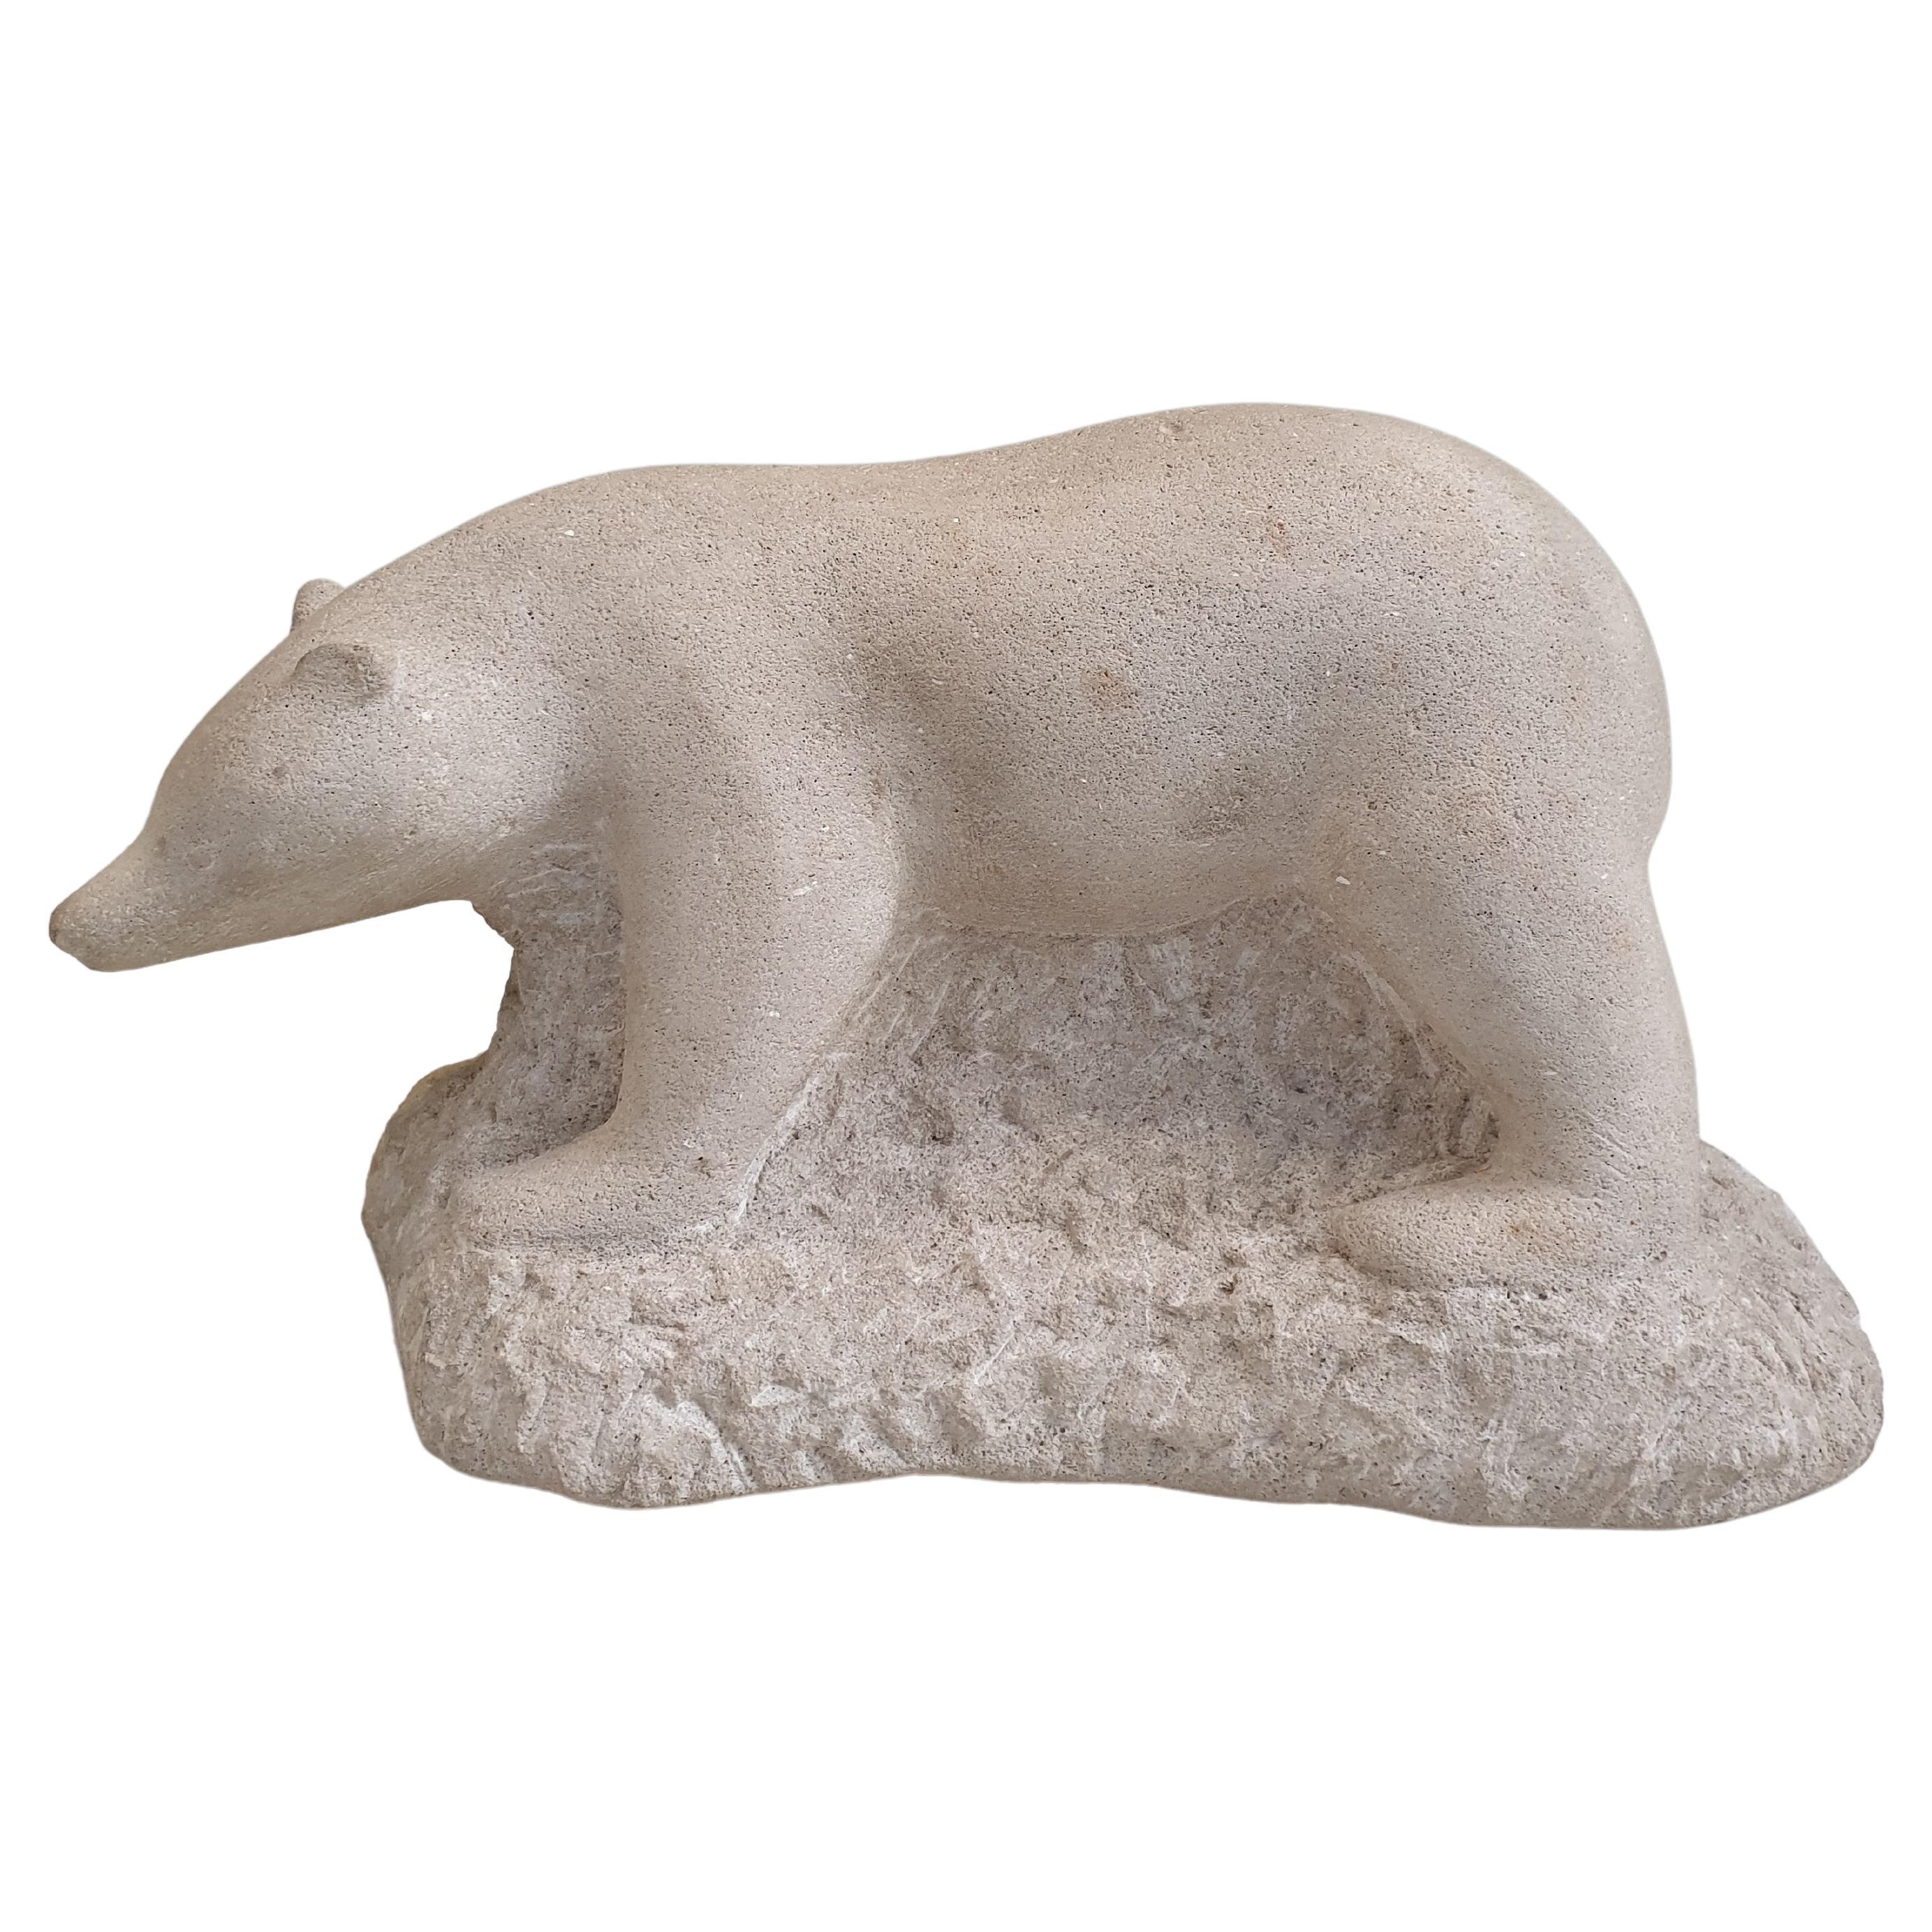 Sculpture en pierre sculptée d'un ours polaire, signée.